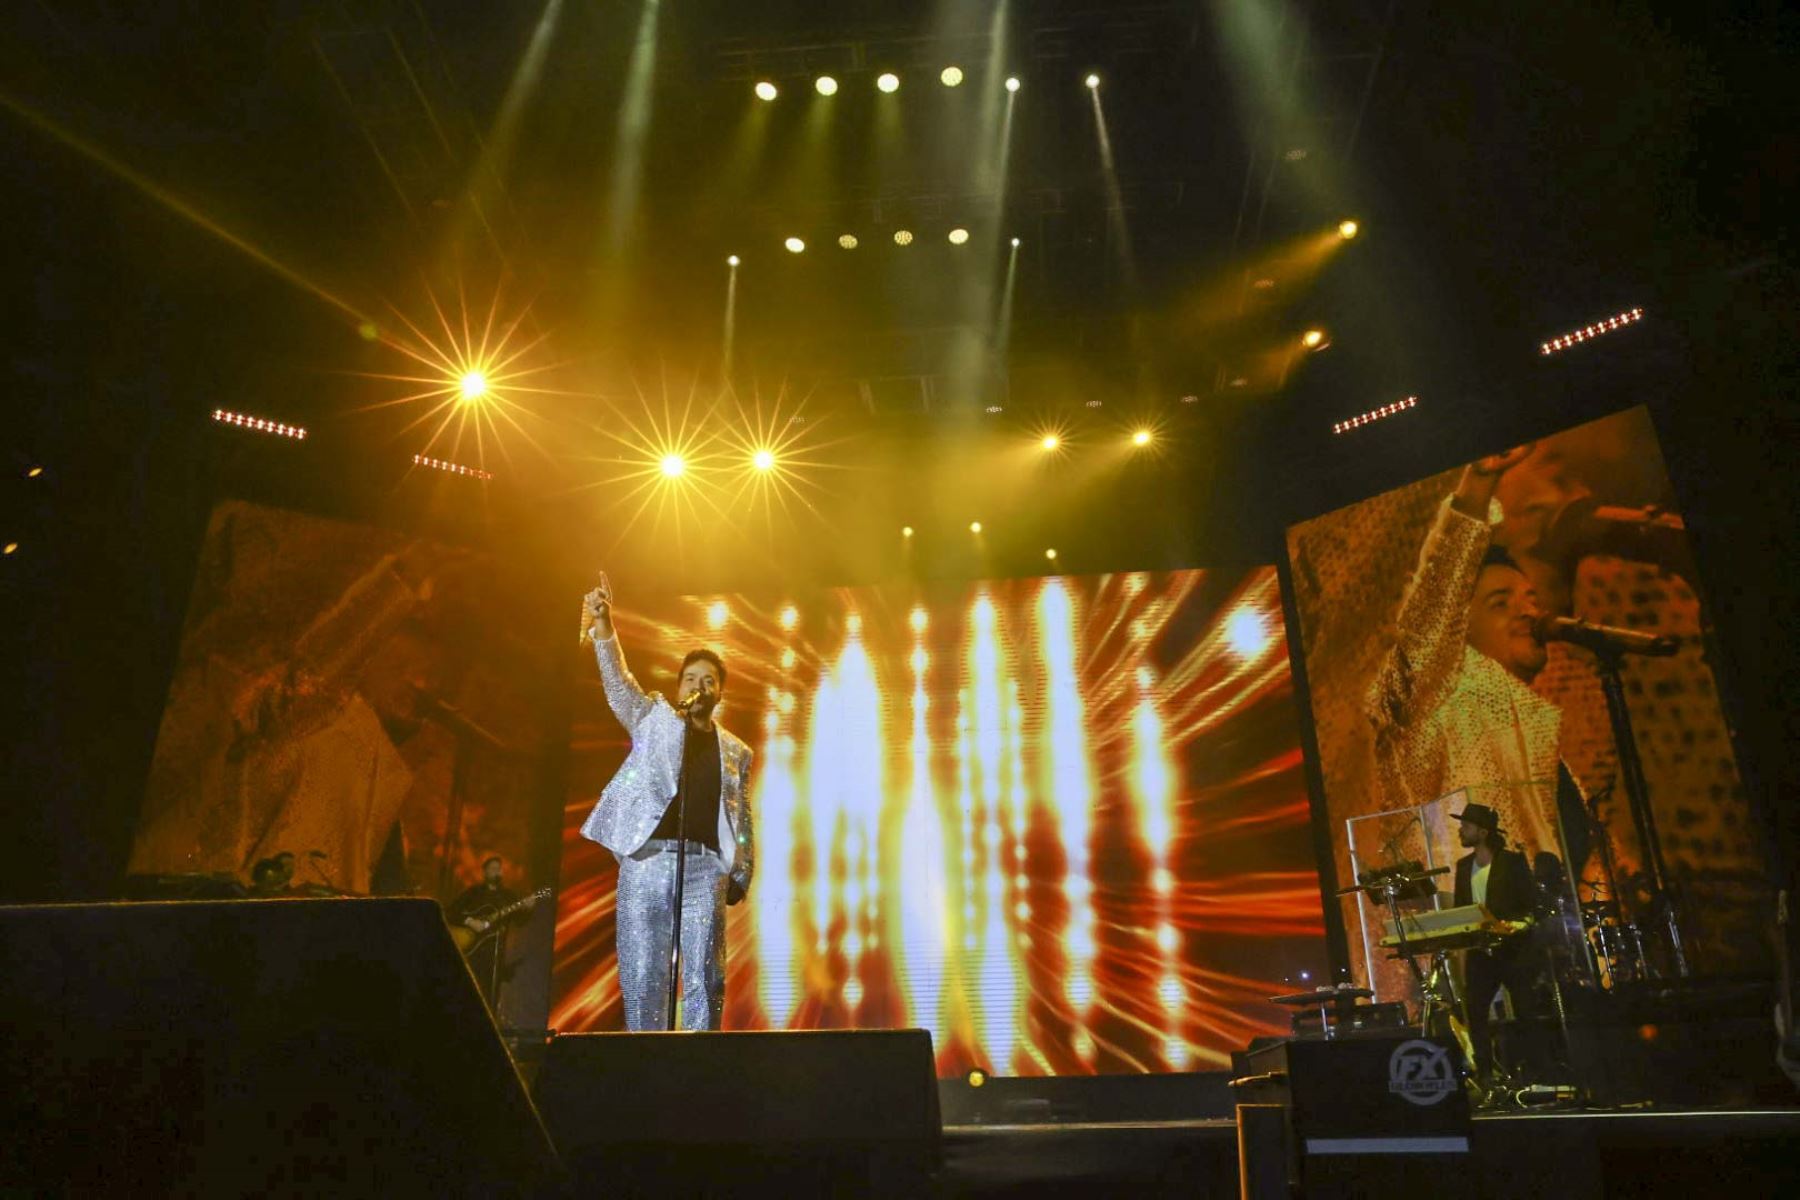 El artista puertorriqueño Luis Fonsi llegó a Lima este miércoles 15 de junio y deslumbró al público con lo mejor de su repertorio como parte de su gira “La Noche Perfecta”. El cantante se presentó en el Arena Perú de Surco. Foto: ANDINA/Andrés Valle